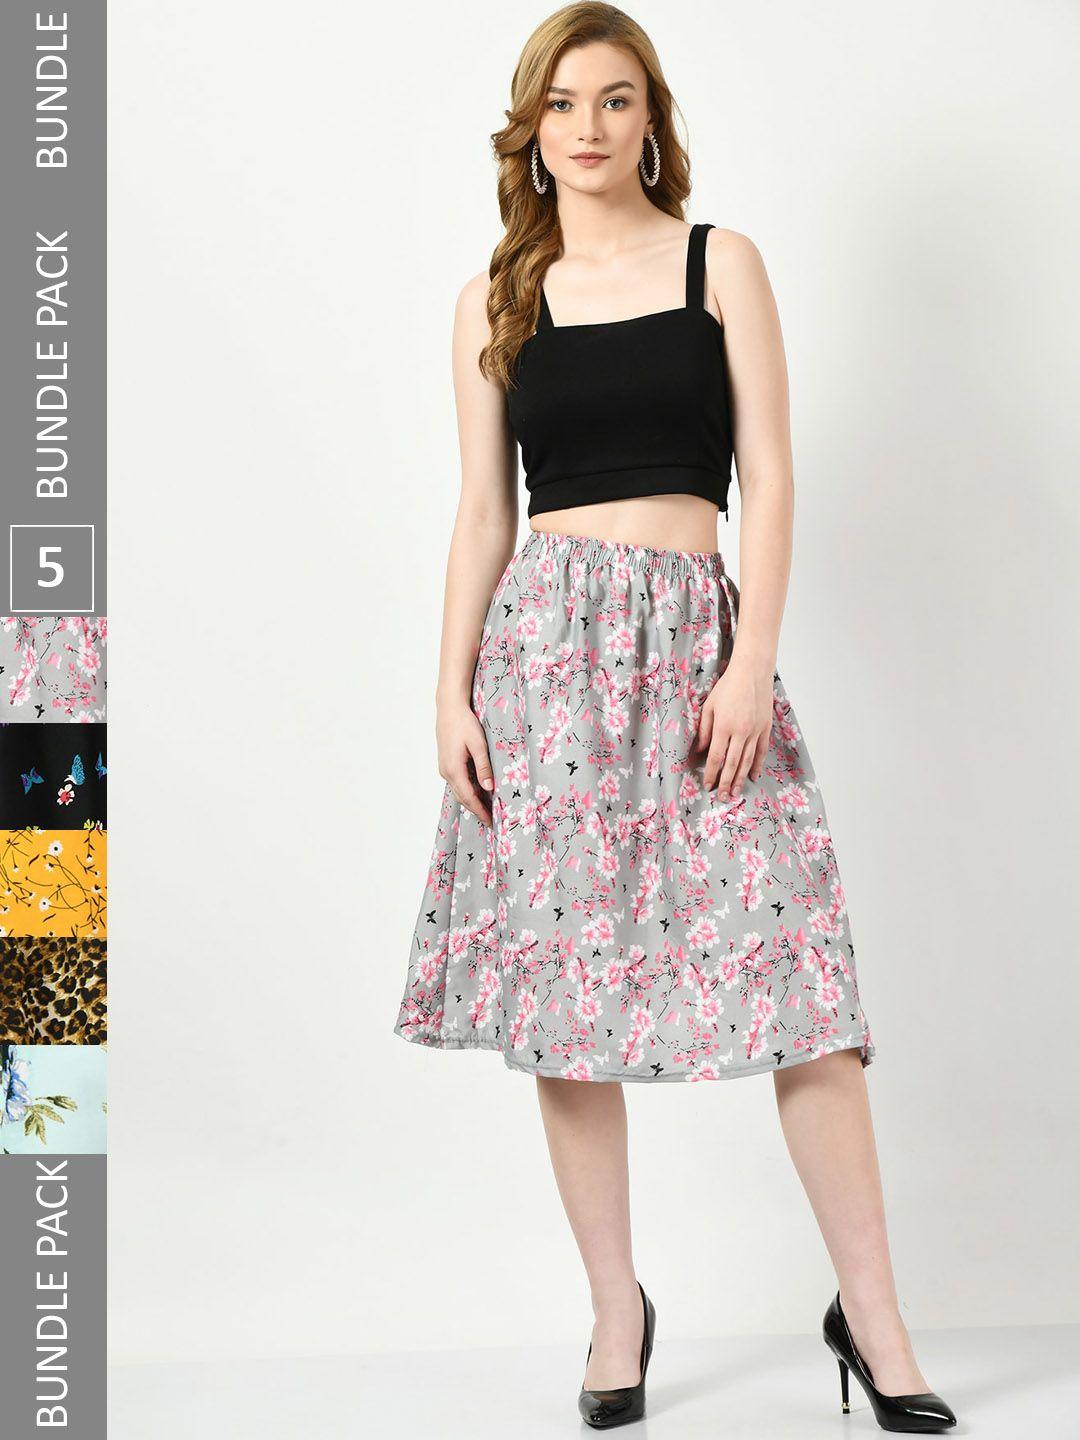 baesd pack of 5 digital floral printed skirts